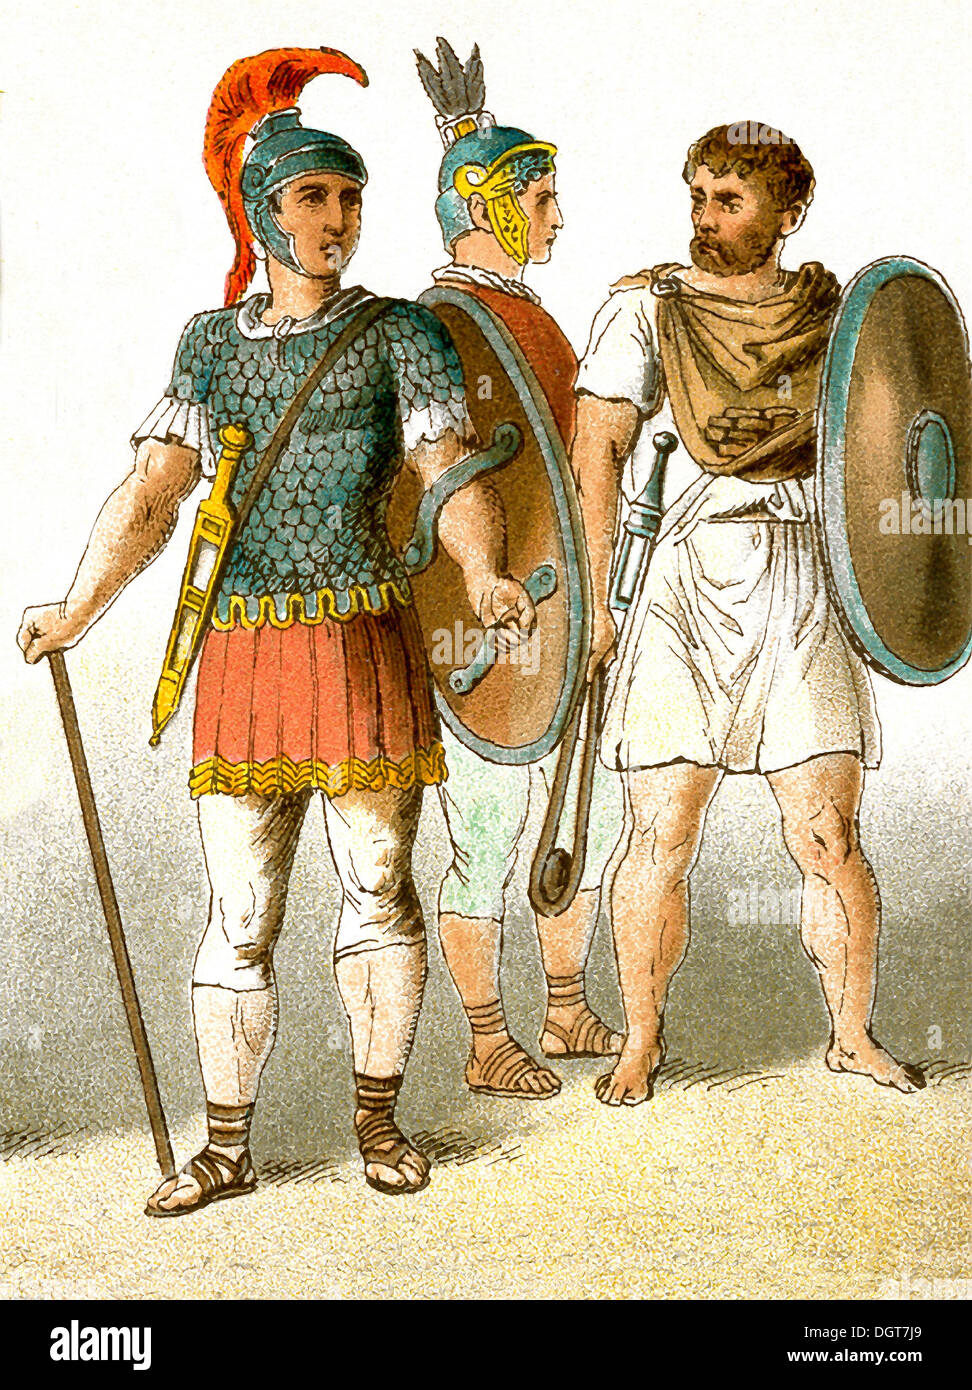 Les chiffres représentent les trois soldats de l'armée romaine antique. L'illustration dates à 1882. Banque D'Images